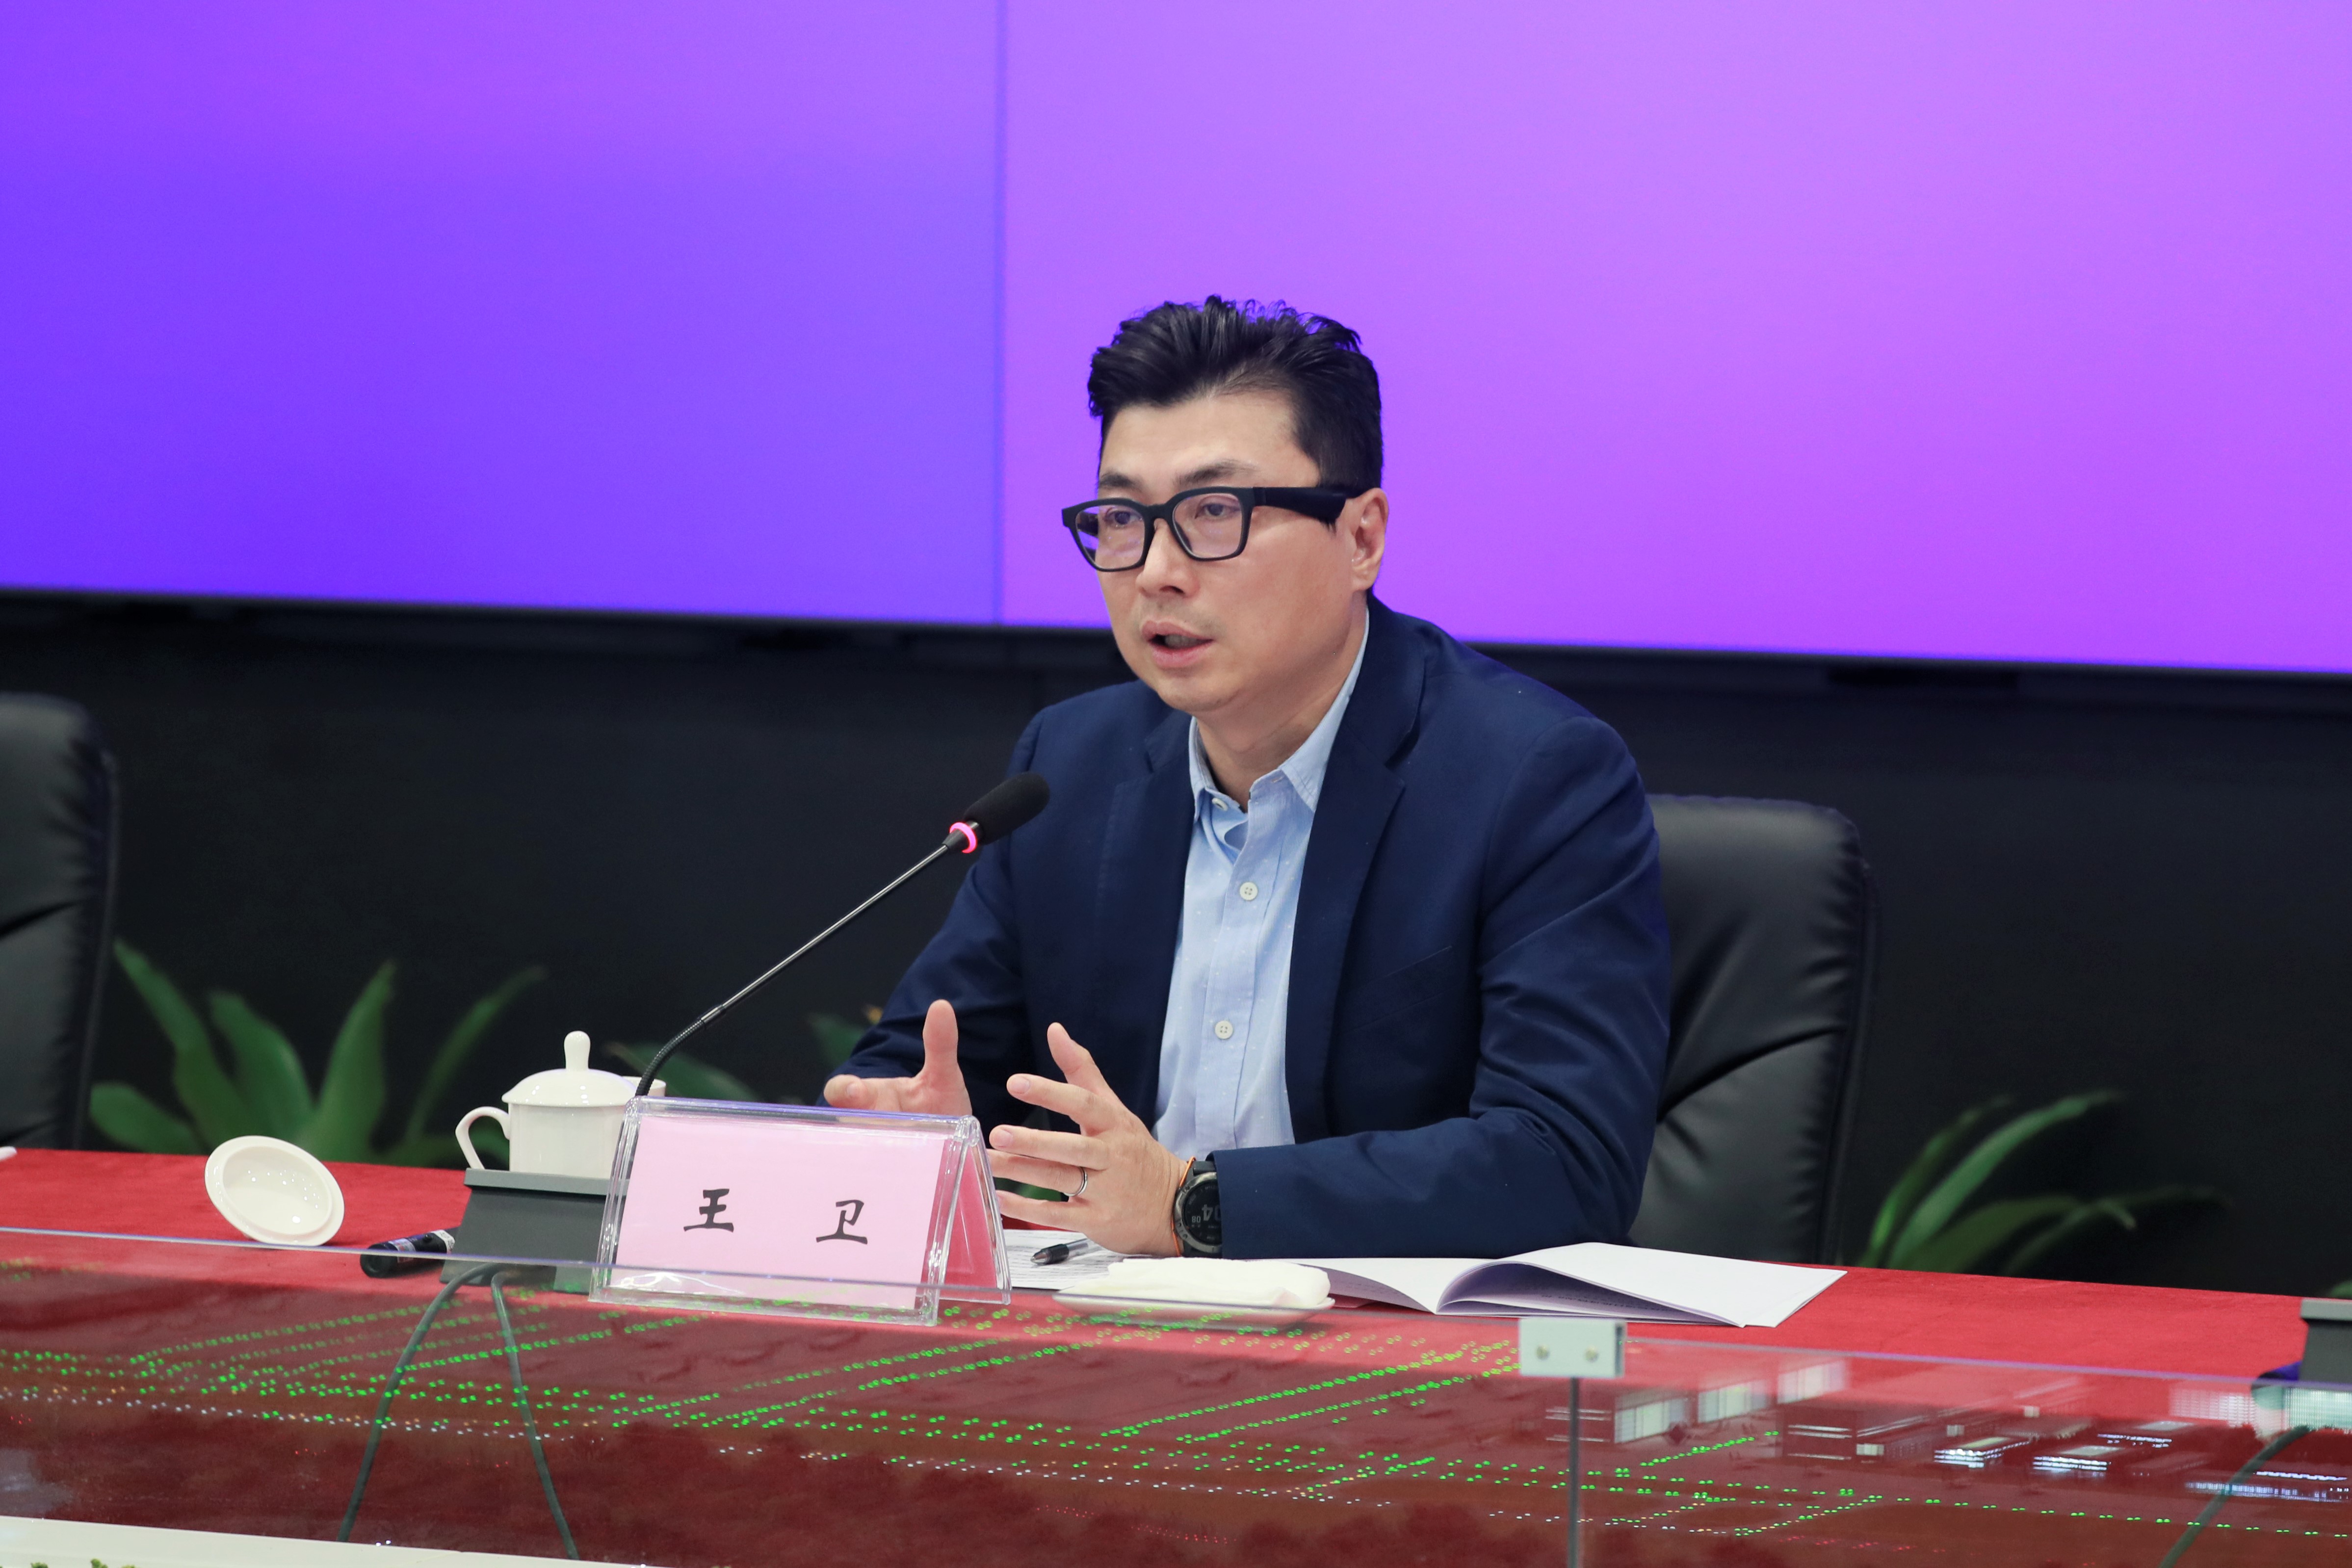 曹广晶在鄂州调研时要求加快推进国际物流核心枢纽项目建设